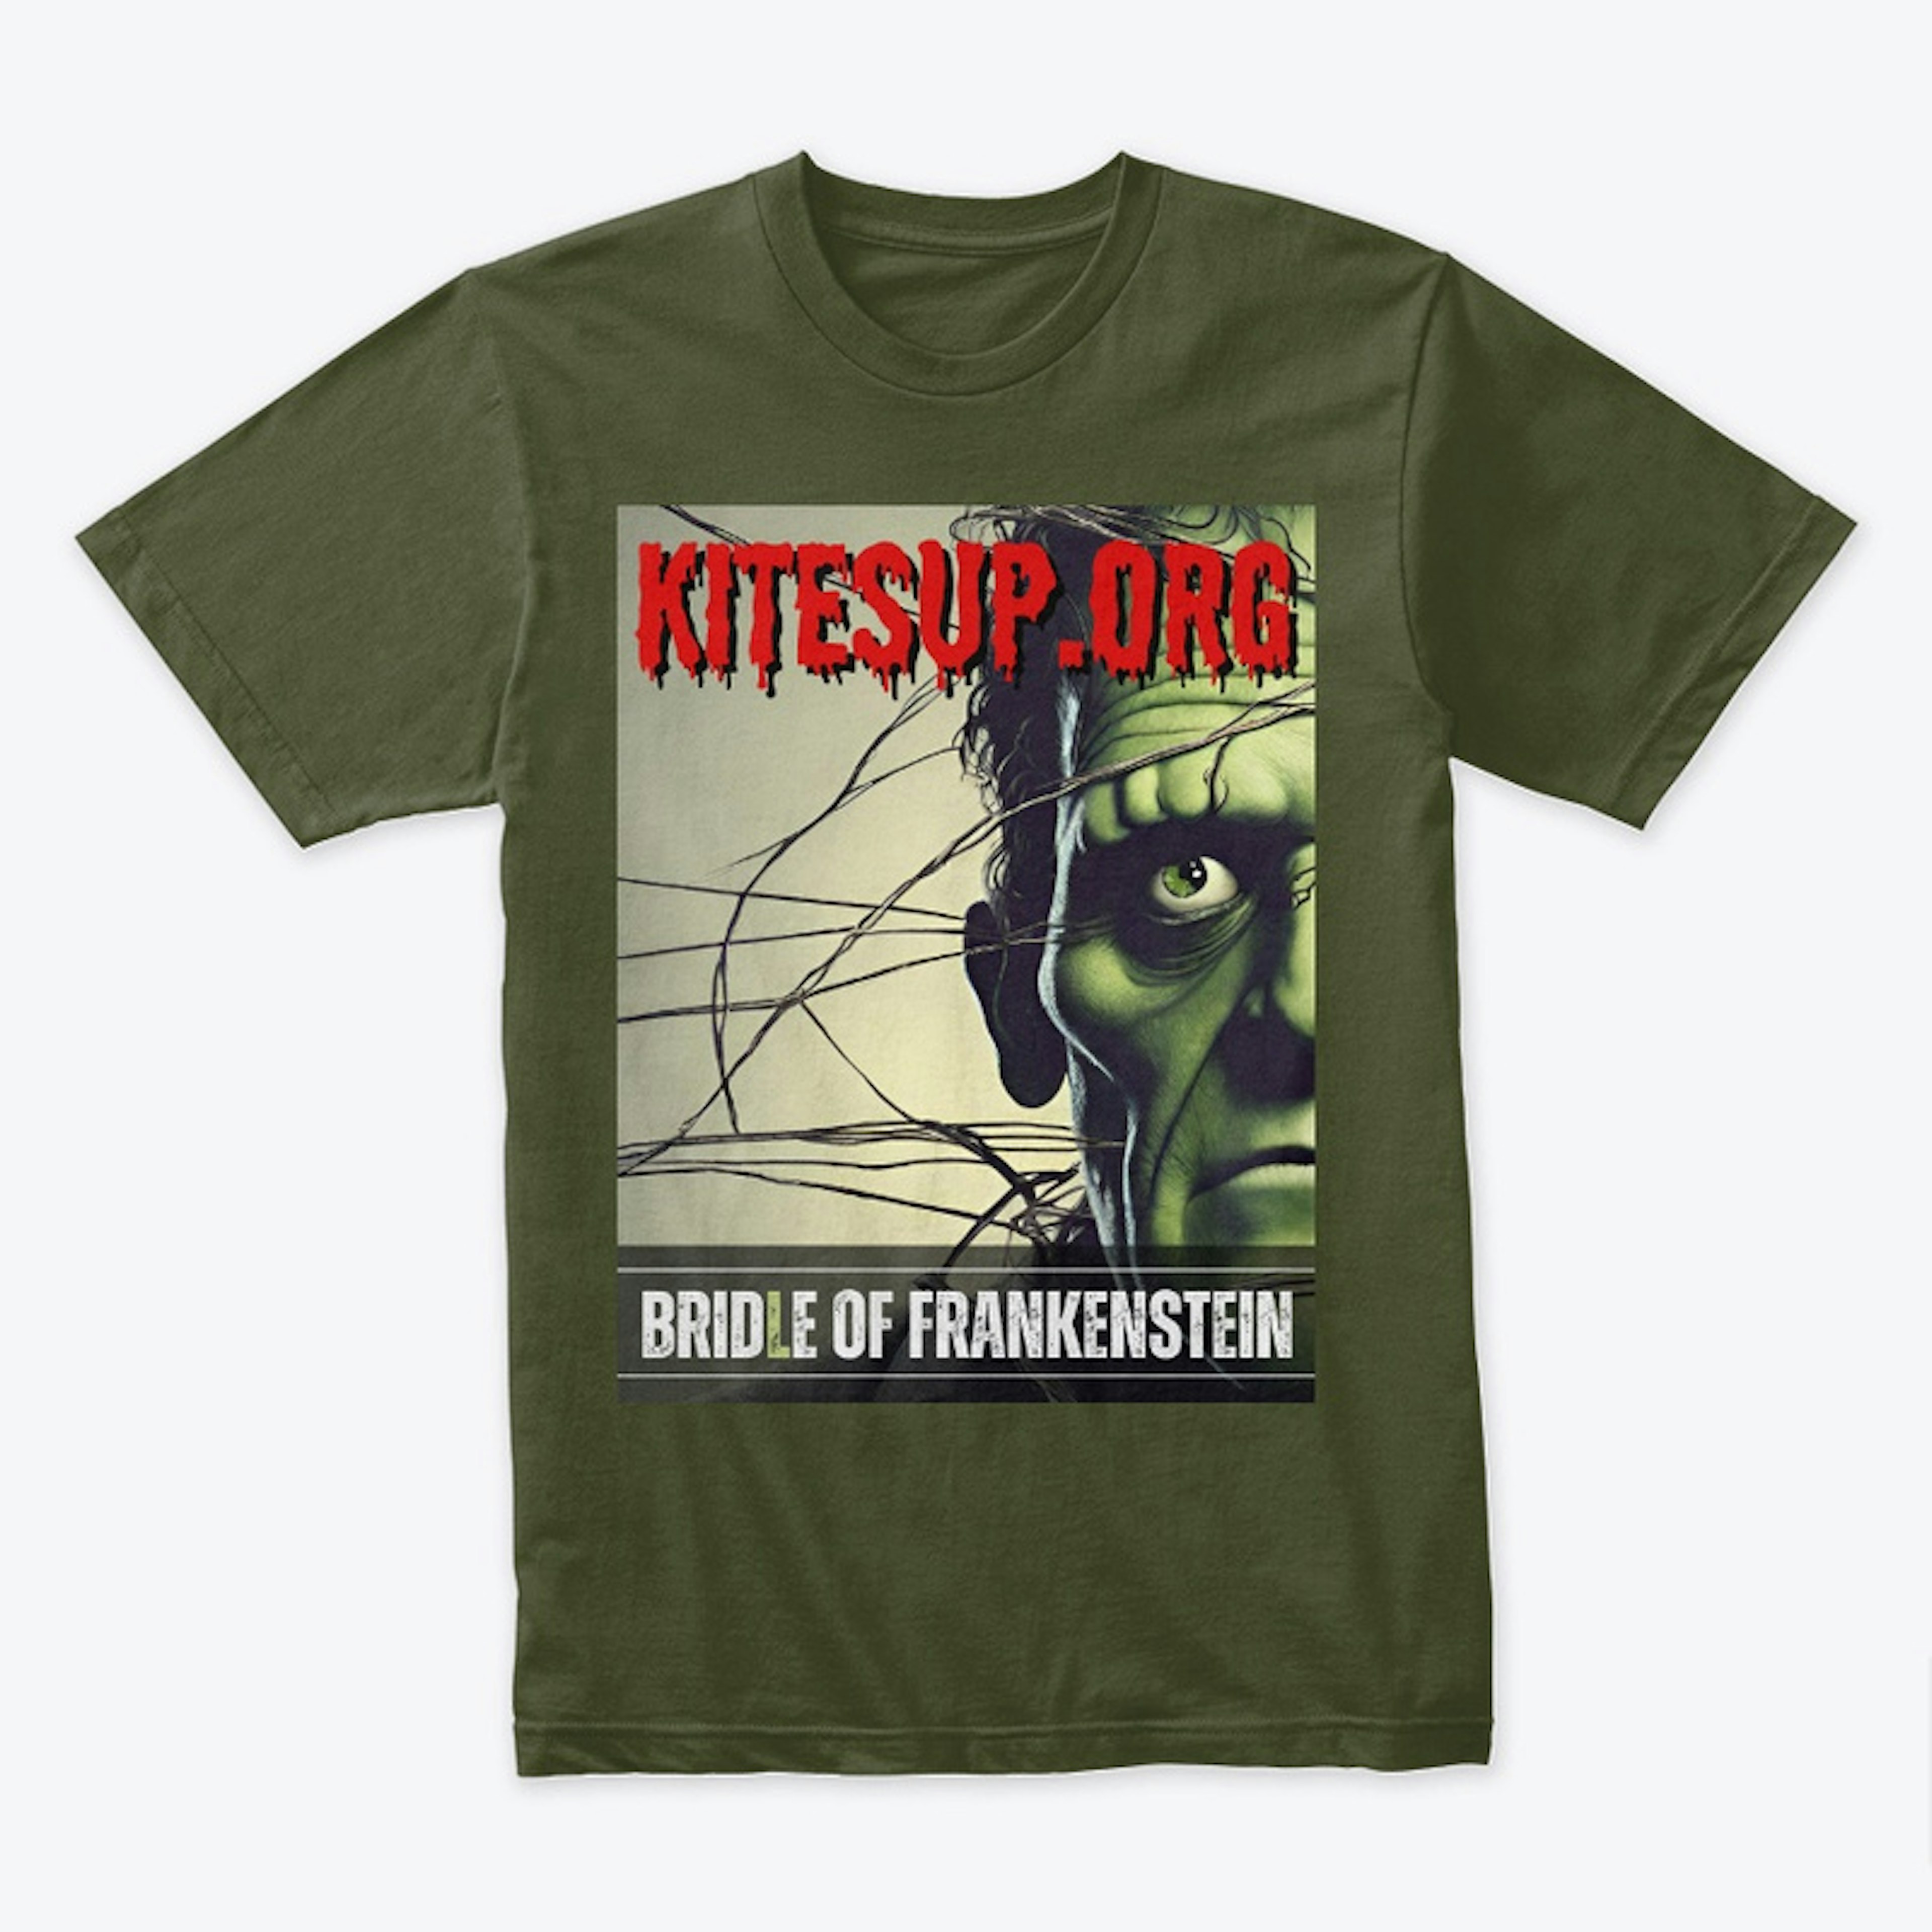 Bridle of Frankenstein